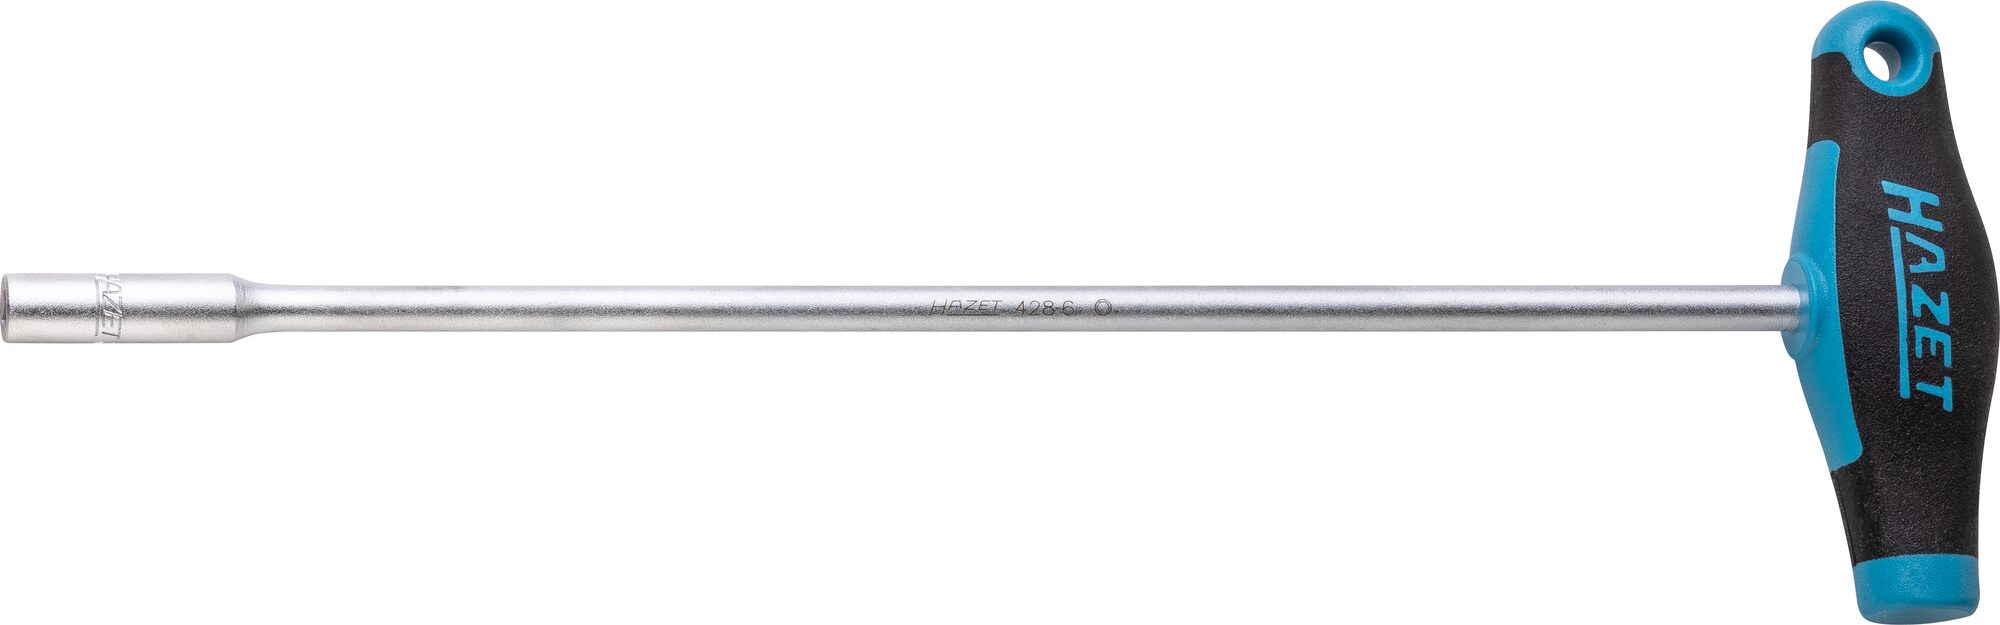 HAZET Steckschlüssel · mit T-Griff 428-6 · Außen Sechskant Profil · 6 mm